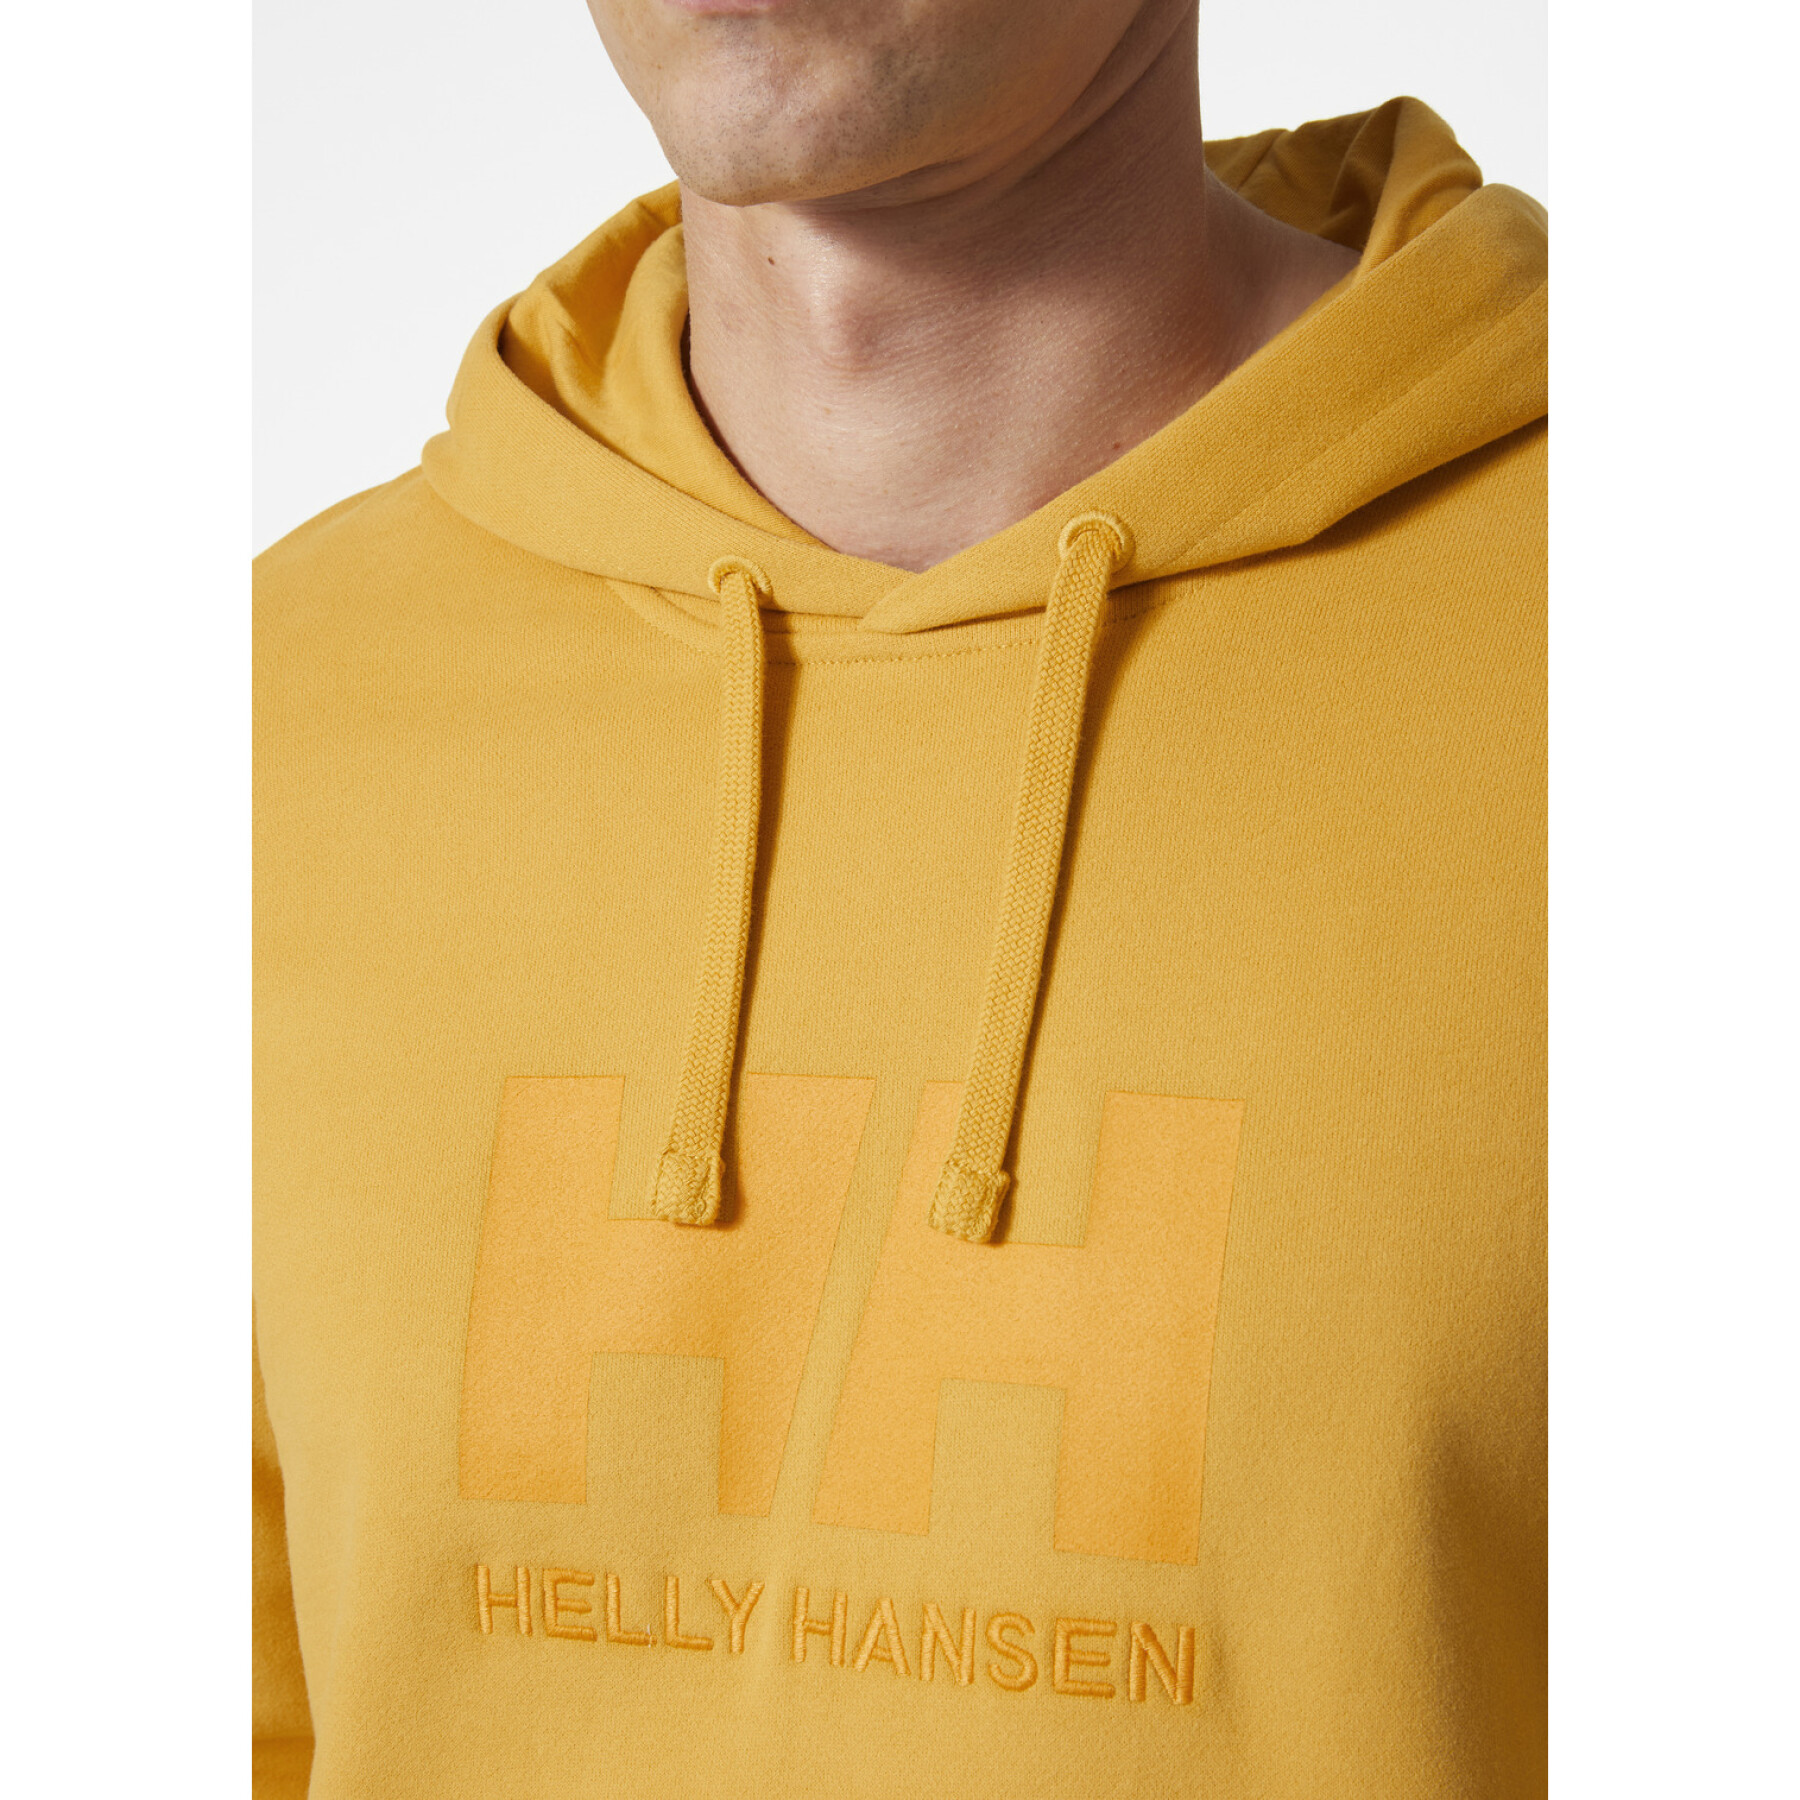 Sweatshirt à capuche Helly Hansen Logo Crew